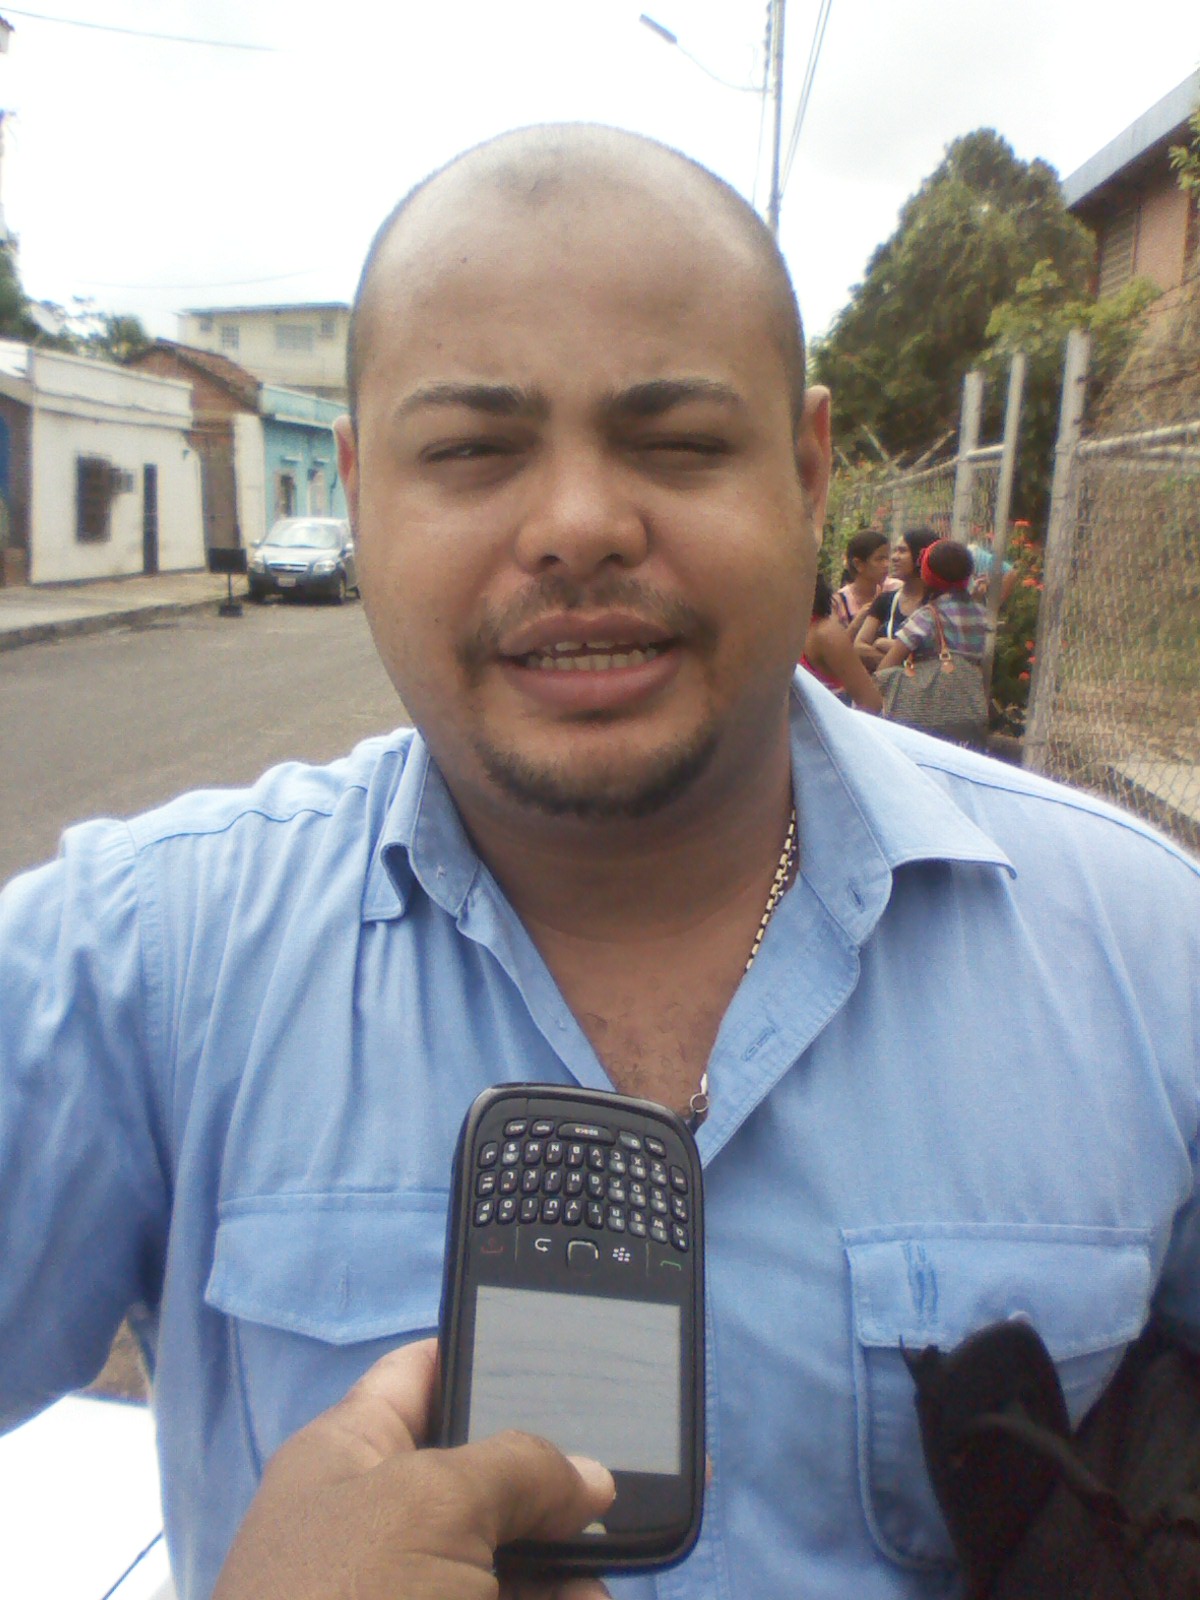 El abogado Thomas Velázquez Sanoja (camisa azul) expresó su respaldo a la convocatoria hecha por el presidente Nicolás Maduro